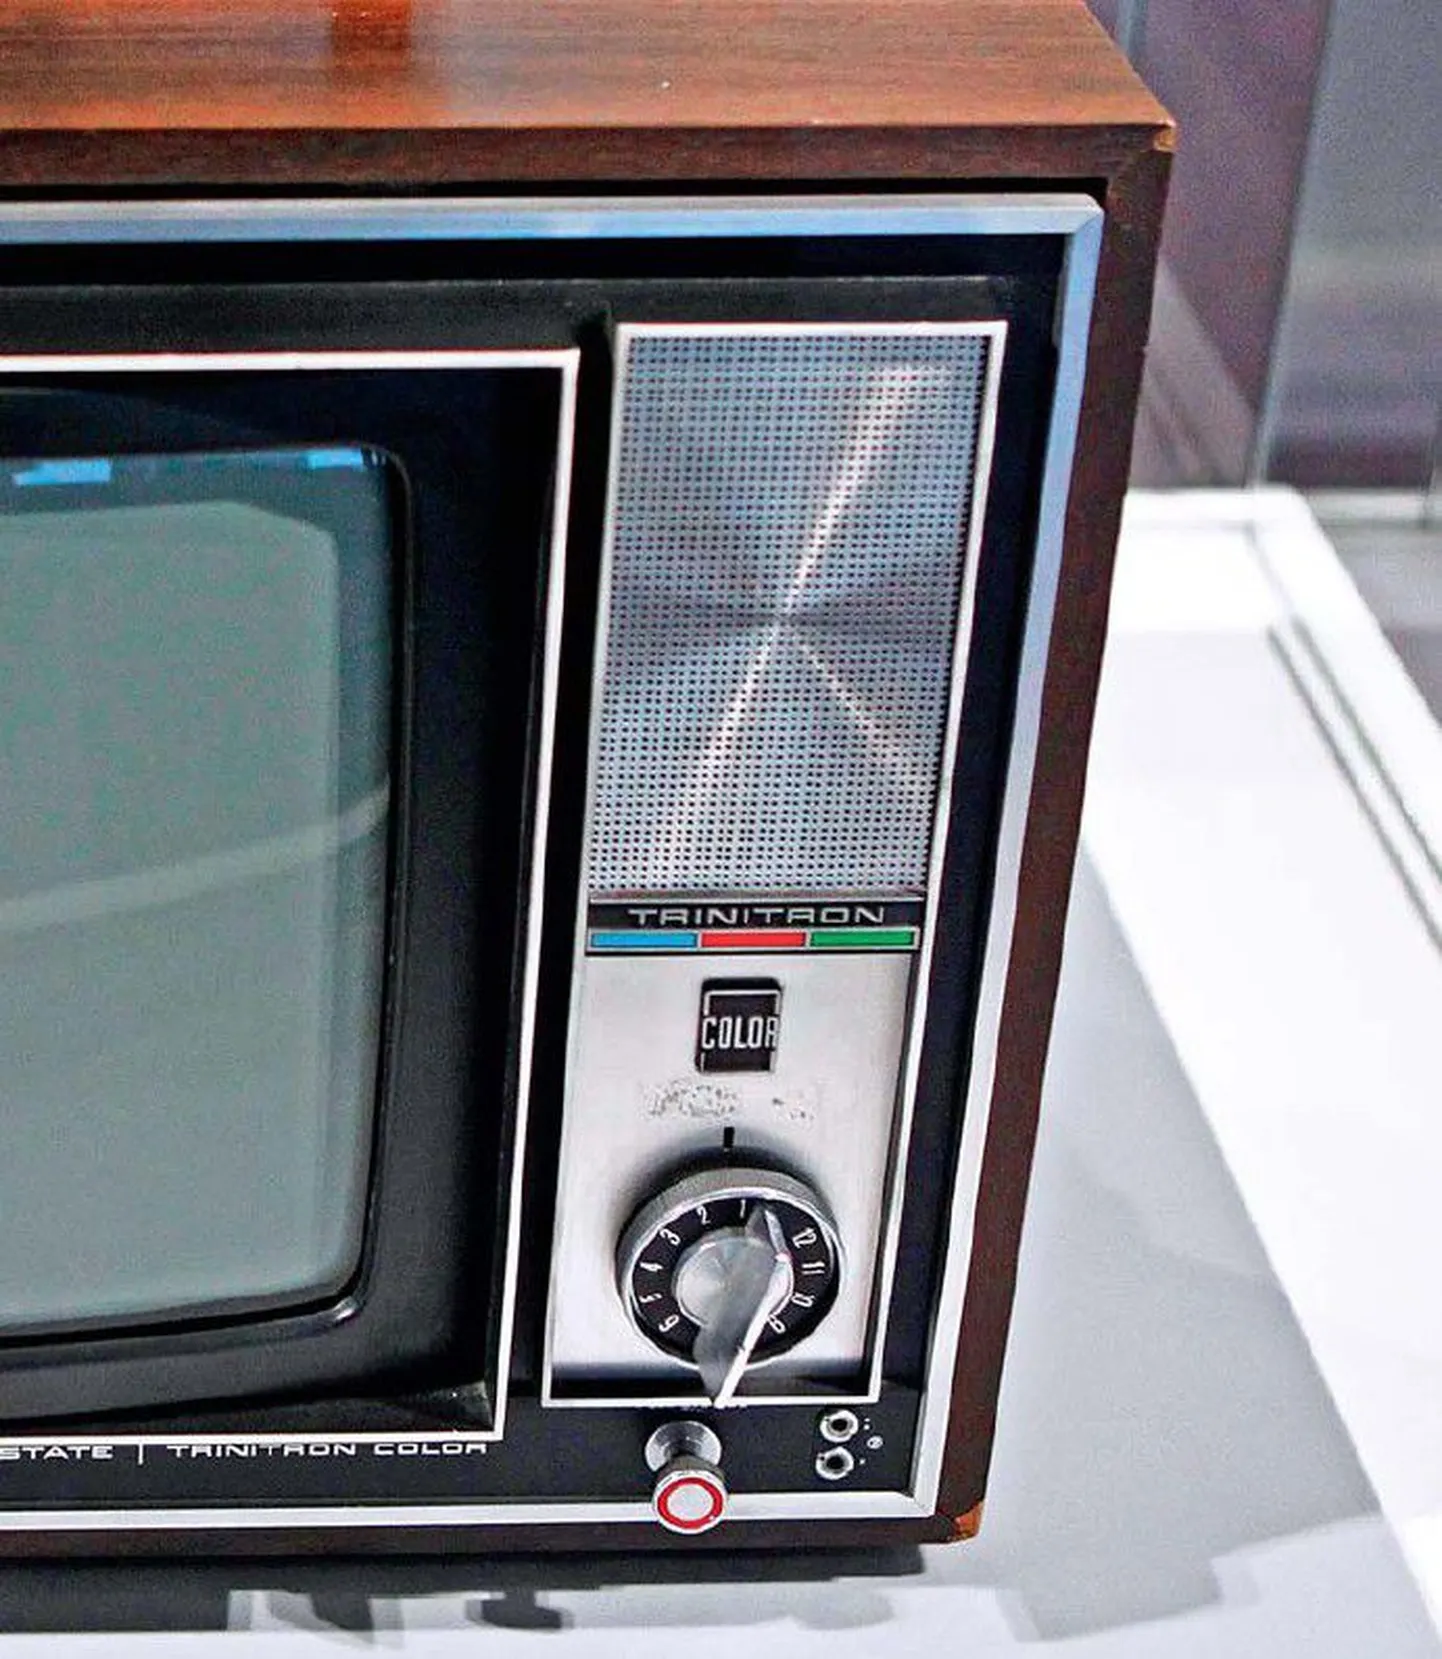 Sony esimene värviteler, mis toodeti 1968. aastal, on välja pandud firma muuseumis.